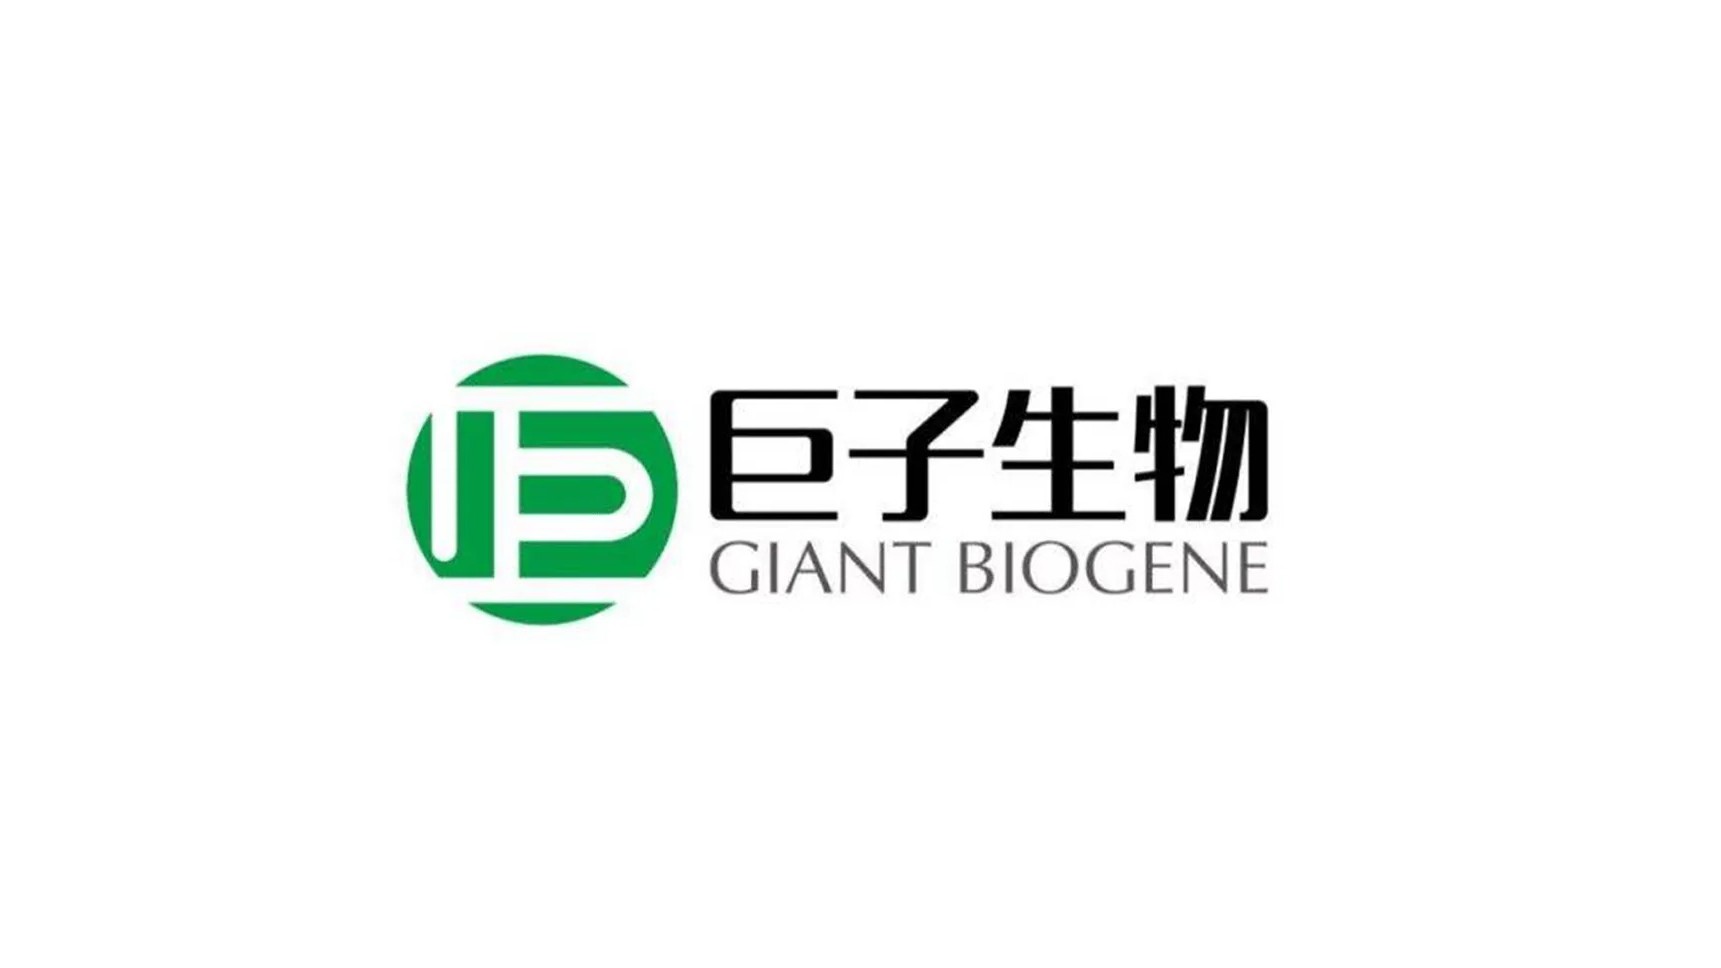 西安巨子生物西安巨子生物：打造国内领先的生物医药企业